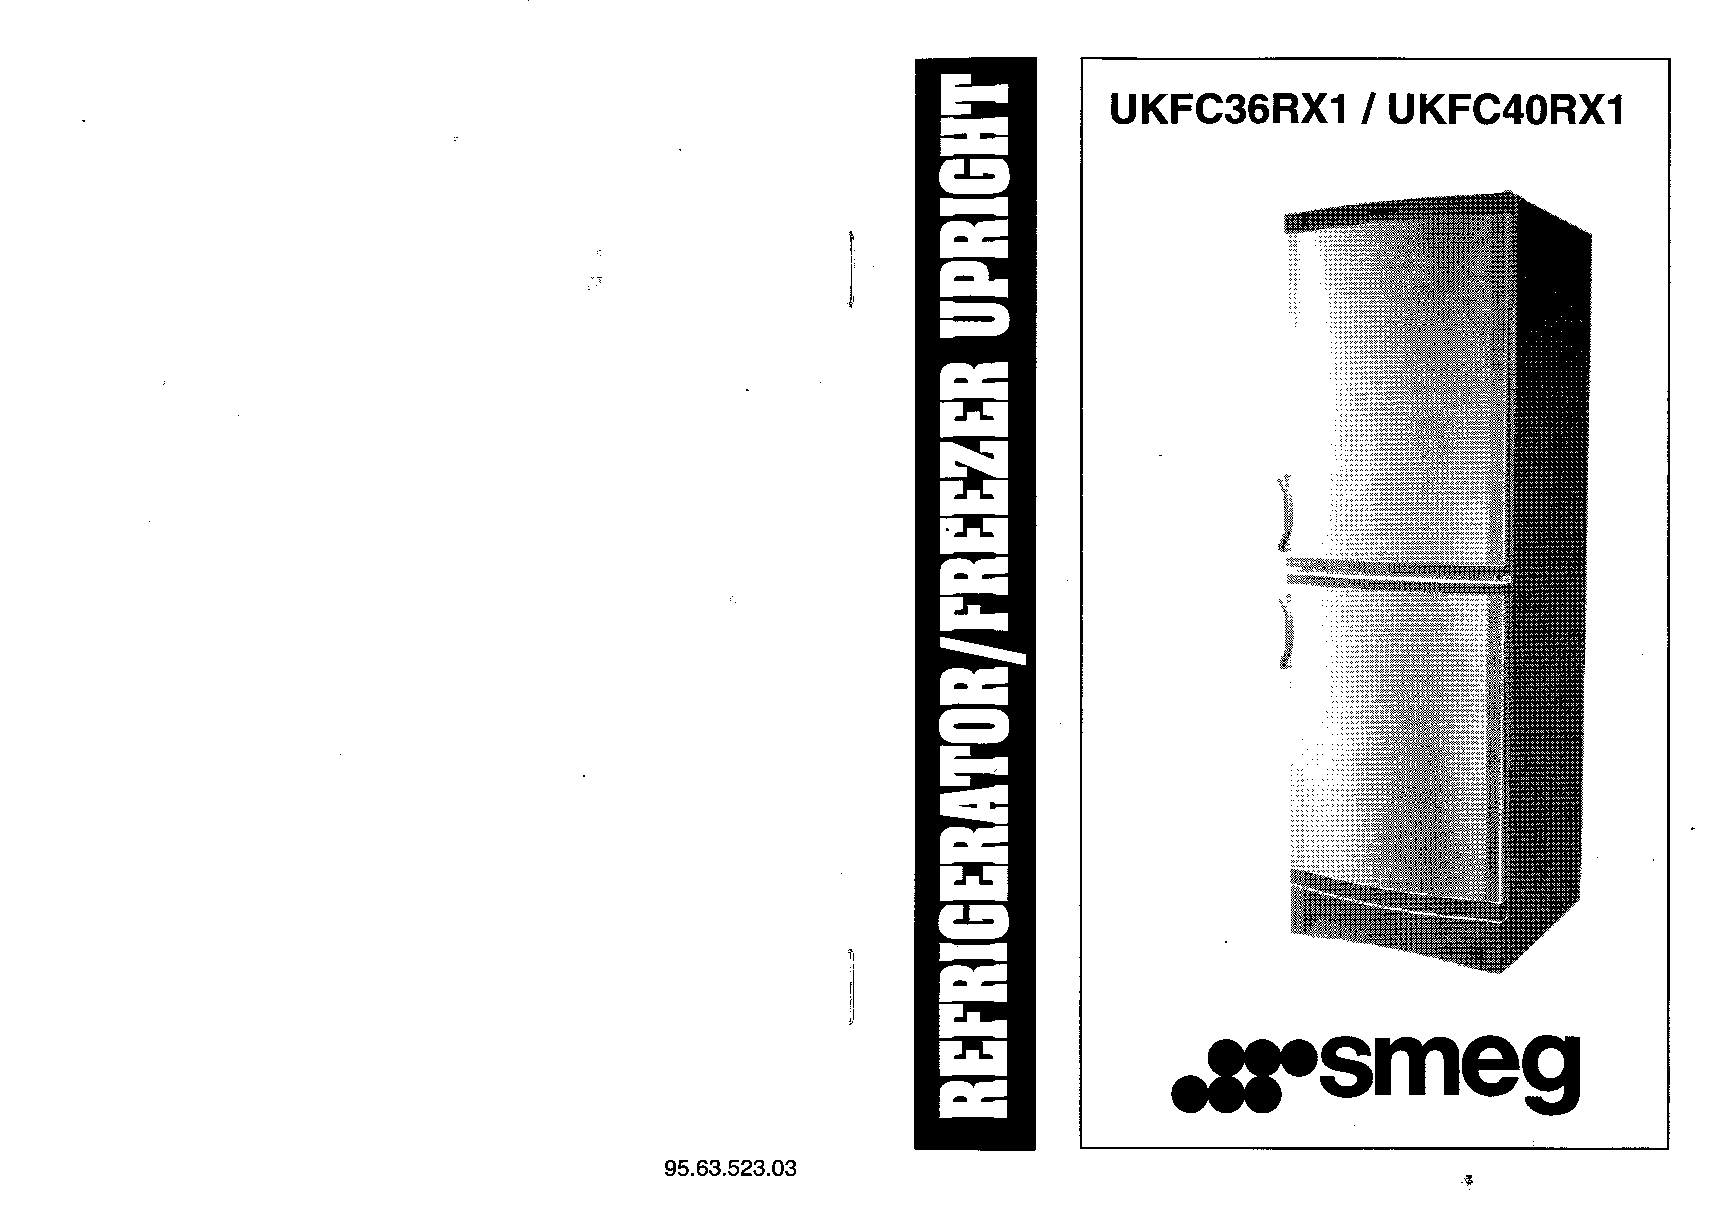 Smeg UKFC36RX1, UKFC40RX1 User Manual